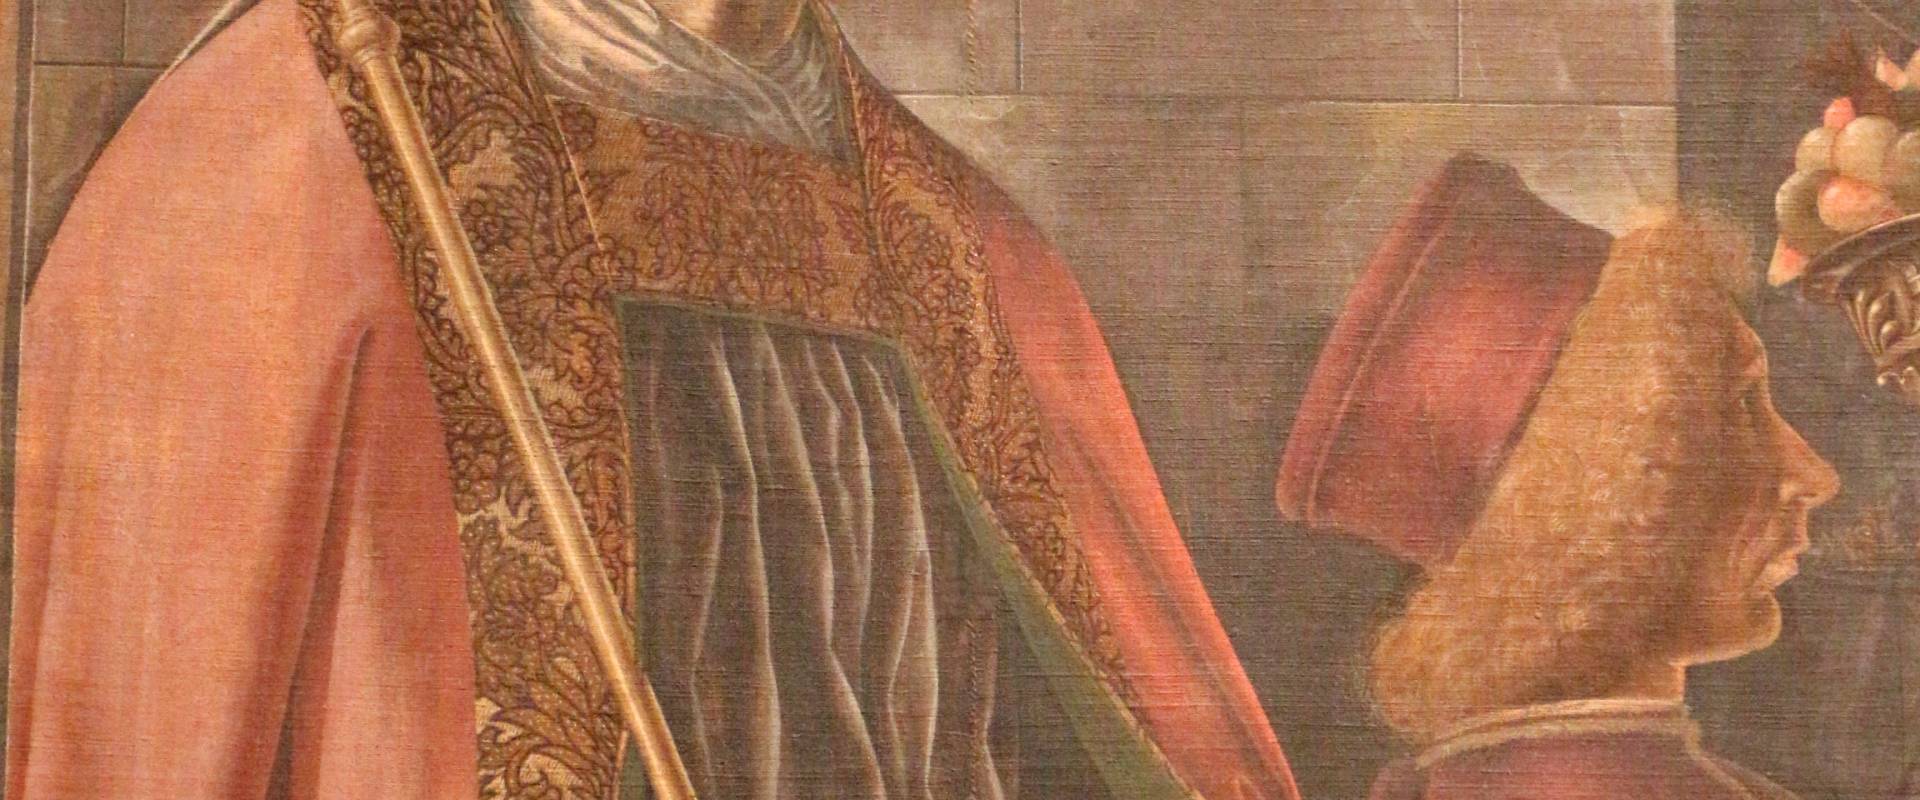 Francesco del cossa, pala dei mercanti, col committente alberto de' cattanei, 1474, 03,1 foto di Sailko